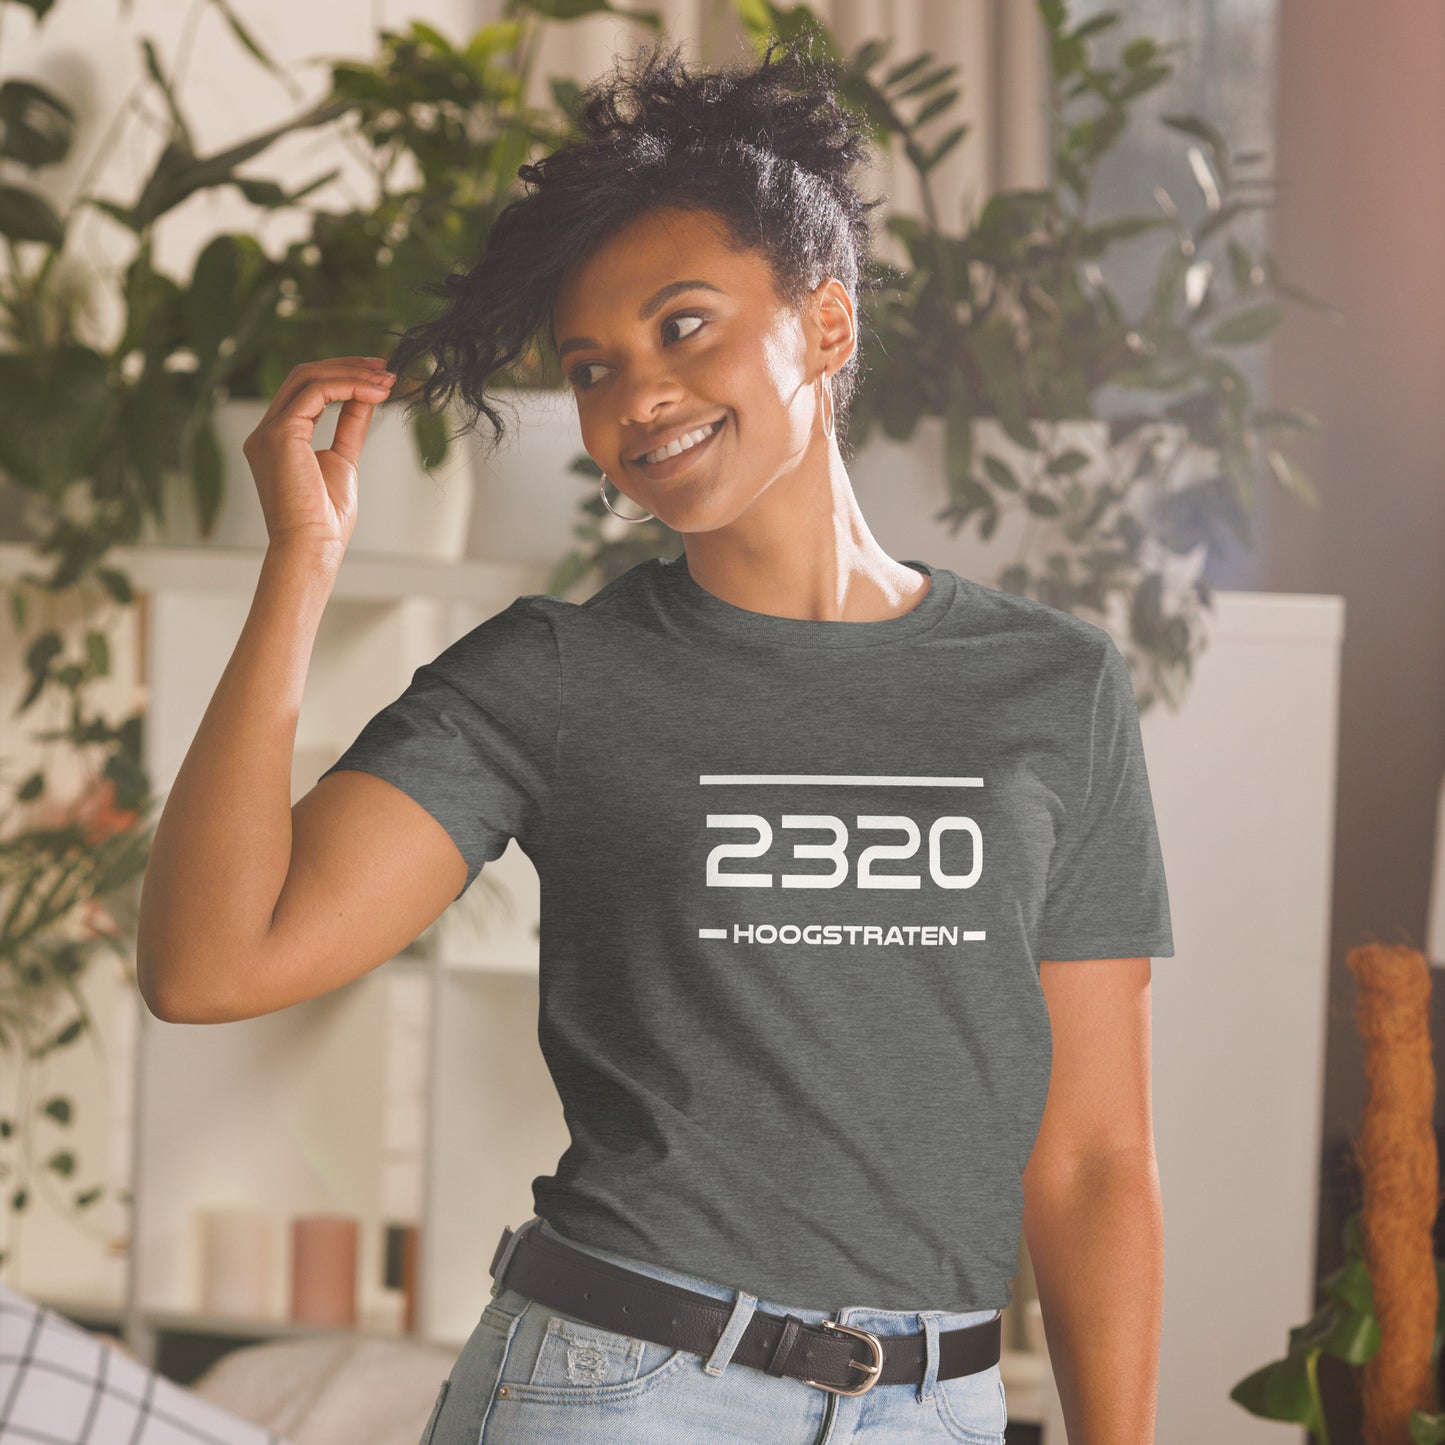 Tshirt - 2320 - Hoogstraten